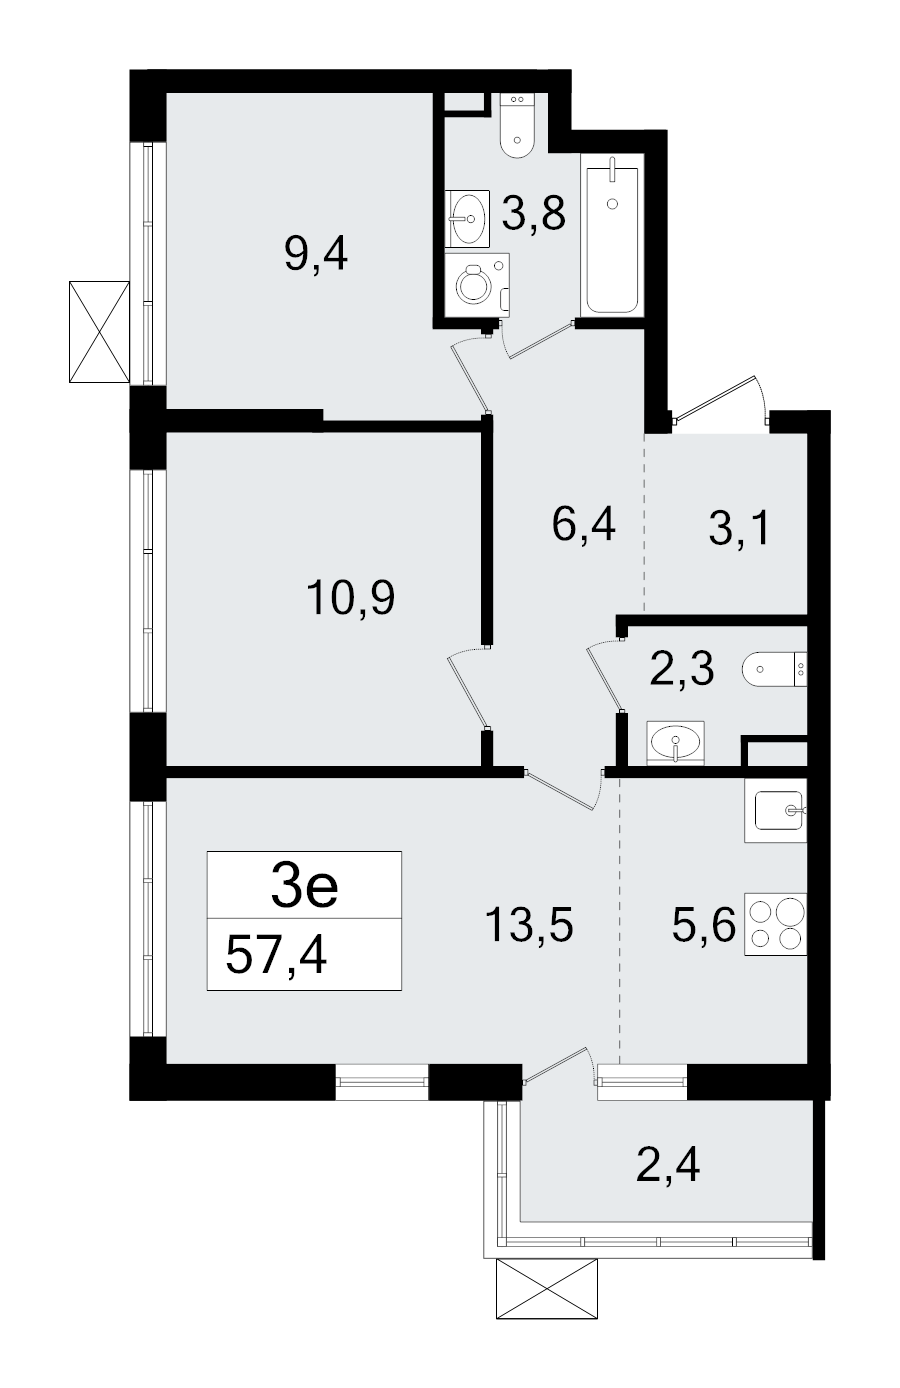 3-комнатная (Евро) квартира, 57.4 м² в ЖК "А101 Всеволожск" - планировка, фото №1